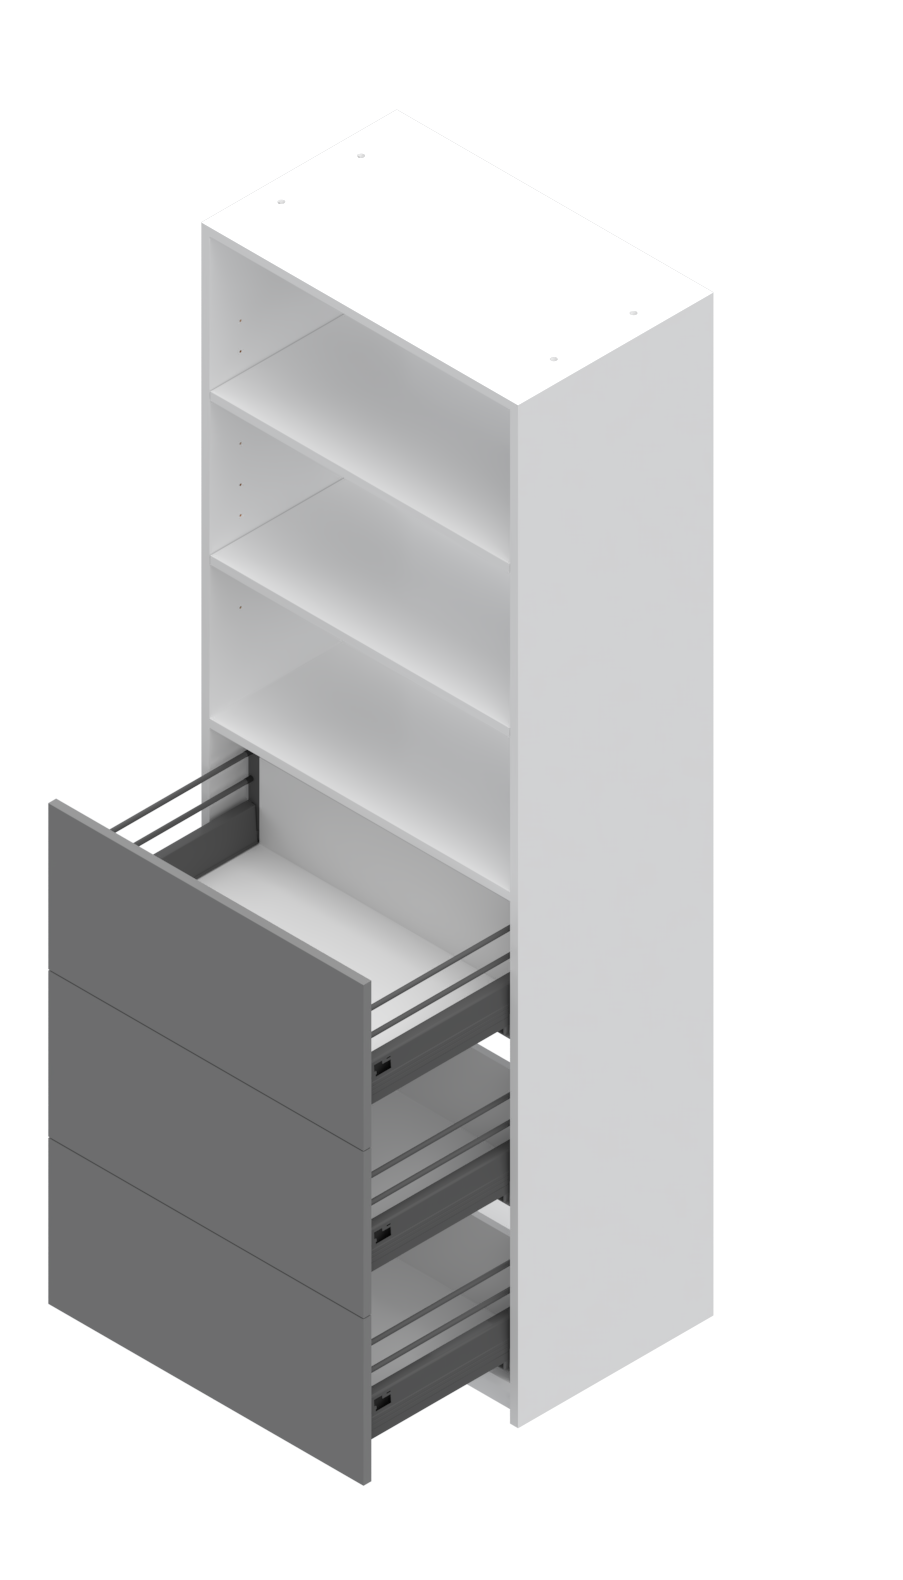 (3) Drawer + Adjustable Shelving Closet System